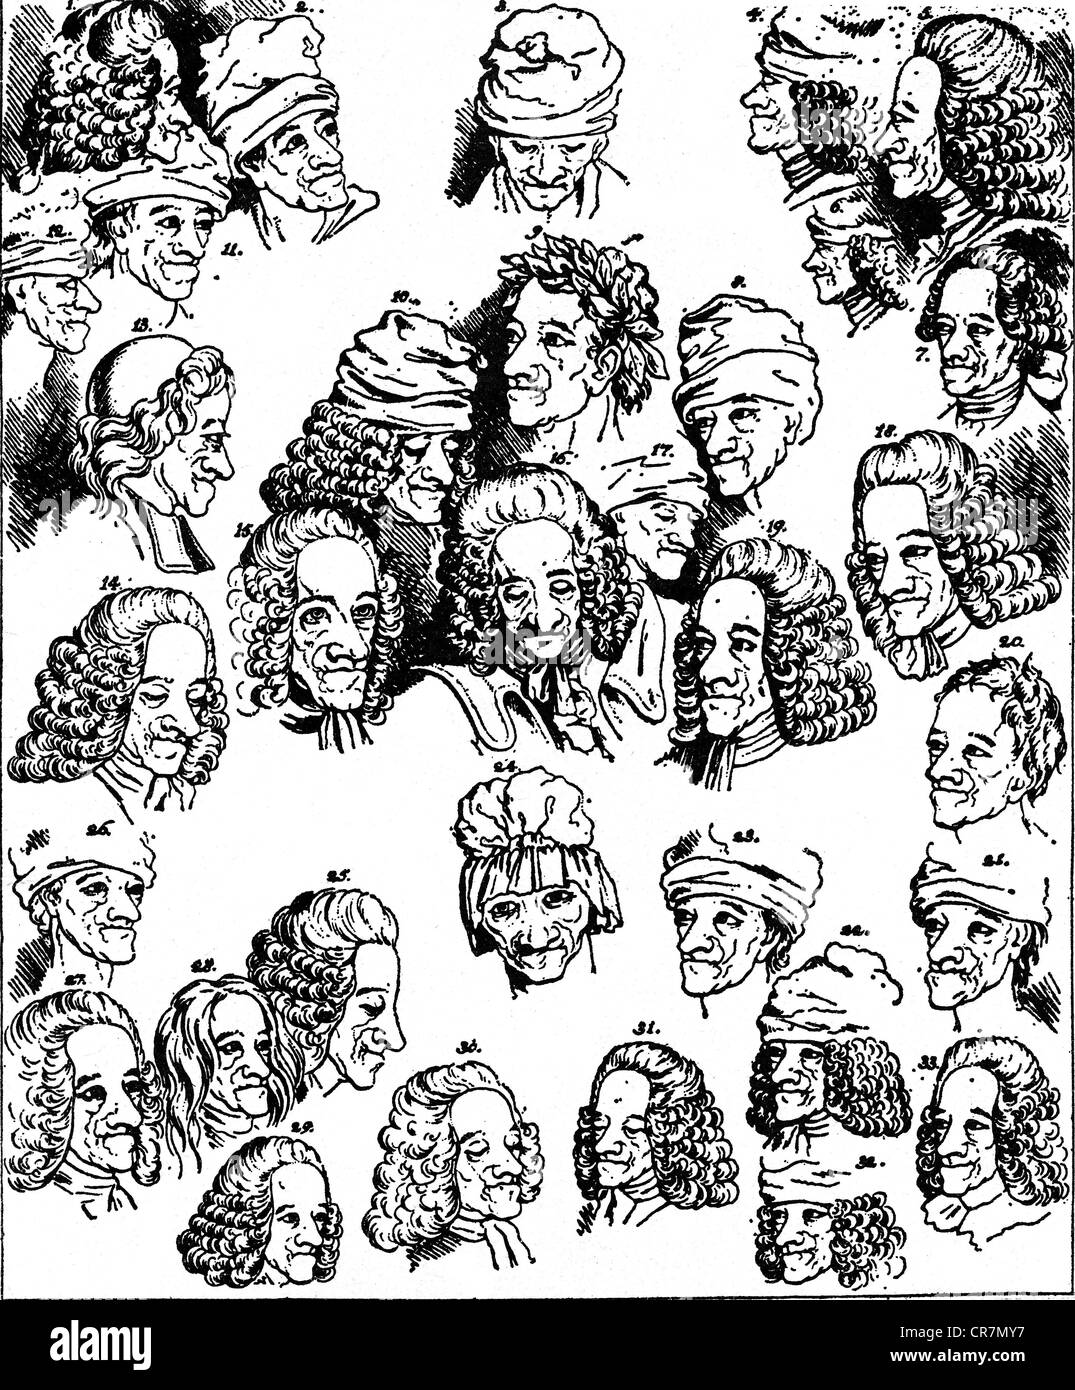 Voltaire, (Francois Arouet), 21.11.1694 - 30.5.1778, französischer Philosoph, "die vielen Gesichter von Voltaire', nach Zeichnungen von M. Hubert, Kupferstich von Johann Heinrich Lips (1758 - 1817), 18./19. Jahrhundert, Artist's Urheberrecht nicht gelöscht werden Stockfoto